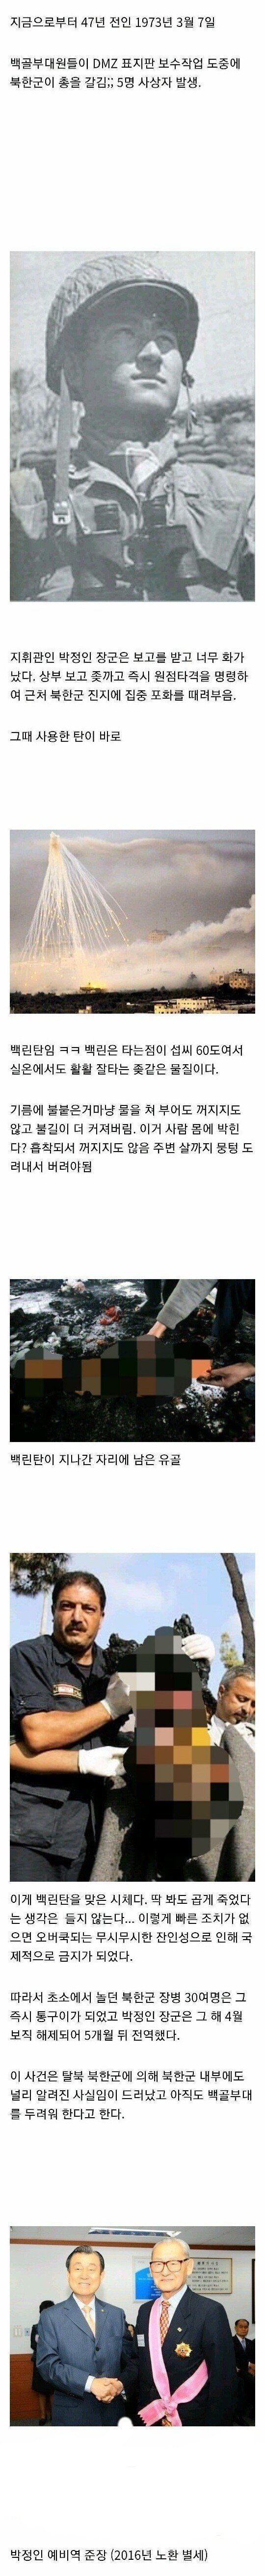 북한군에게 백린탄으로 보복한 전설의 사건.jpg